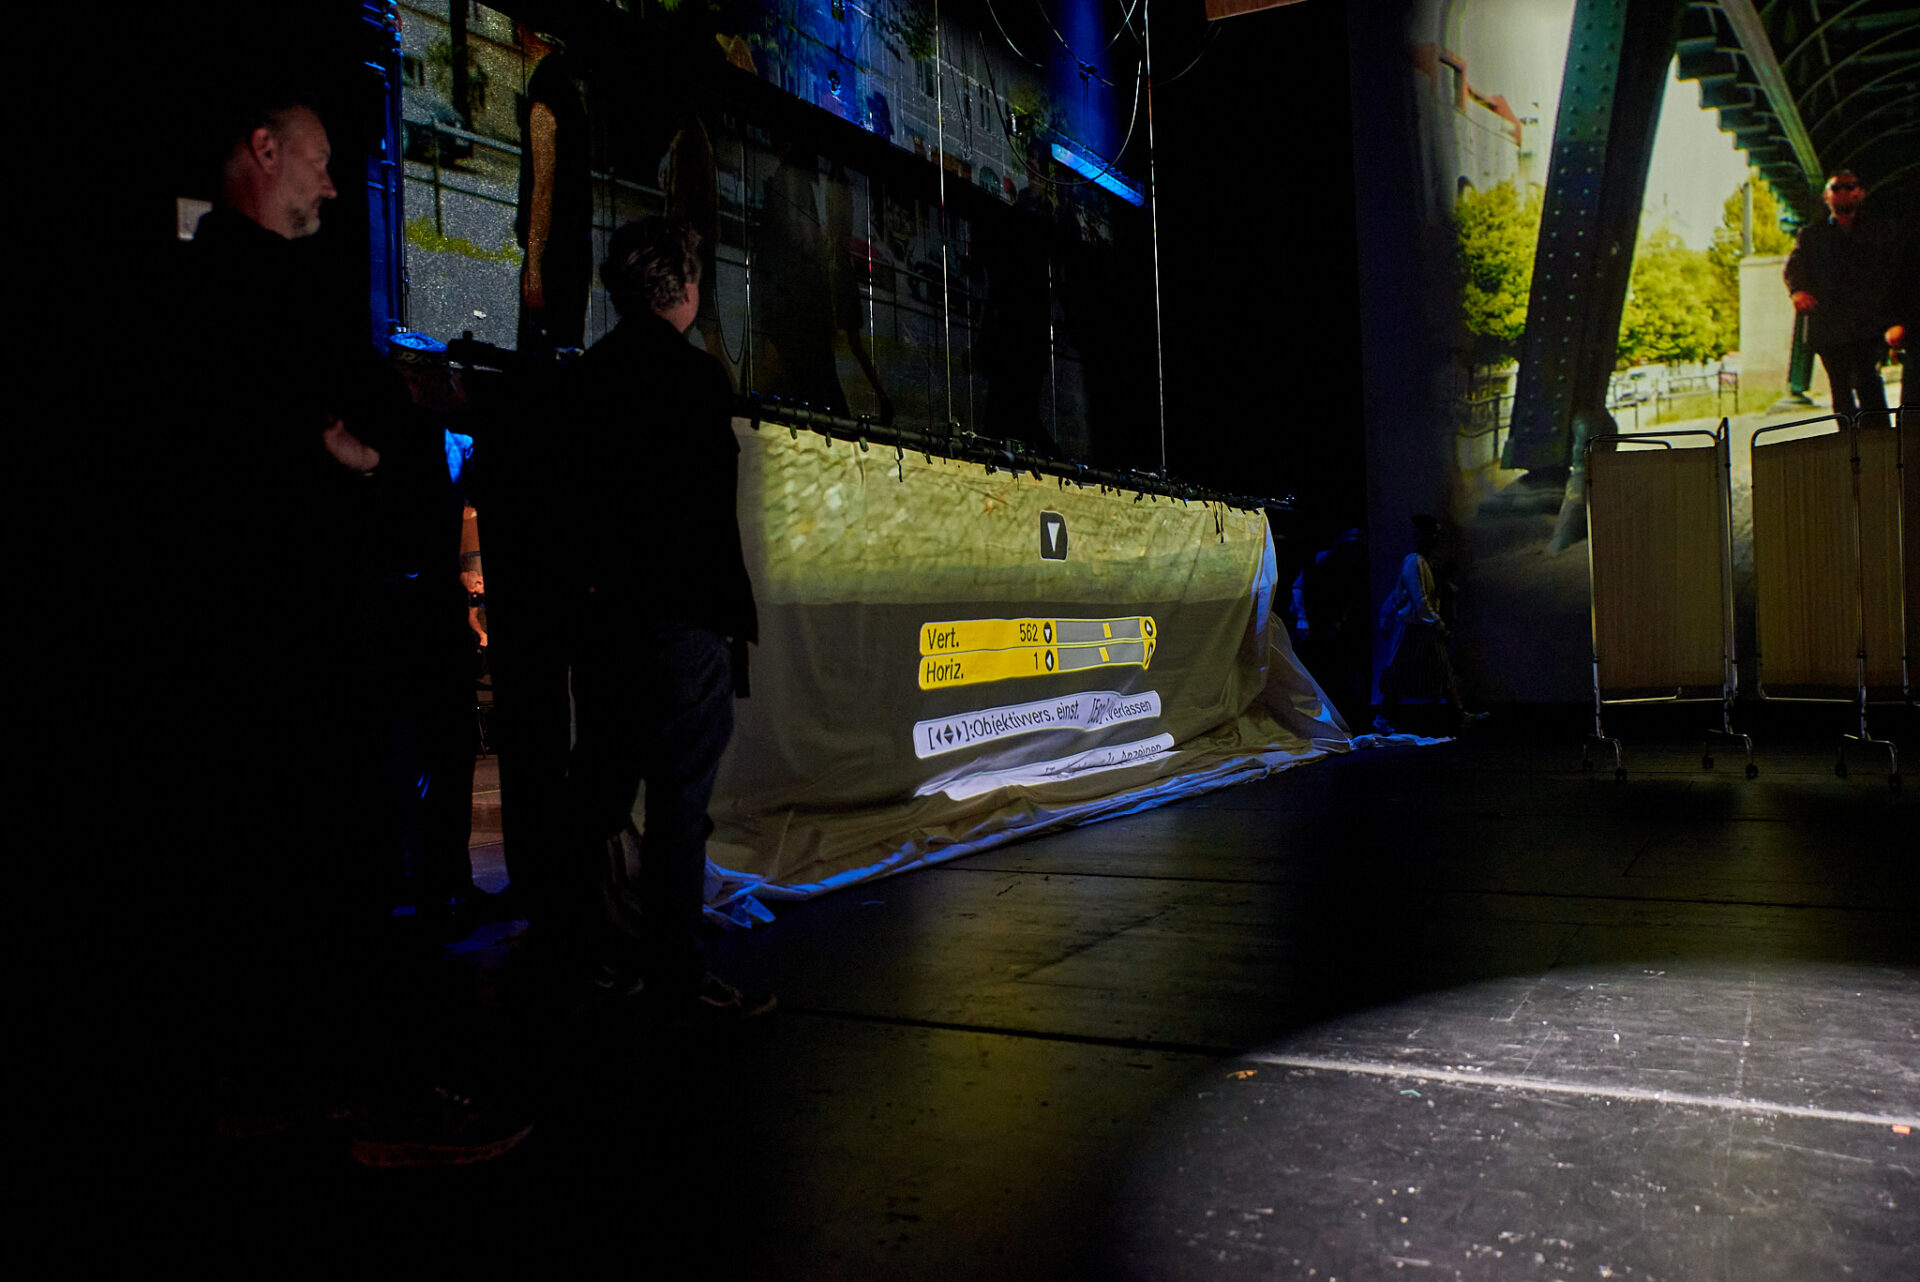 Auf der linken Seite der Bühne stehen zwei Bühnentechniker und beobachten prüfend den Hänger mit der gelblichen Projektionsleinwand, die parallel zur linken Bühnenseite ausgerichtet ist. Im Hintergrund zeichnet sich die linke Hälfte der mittleren Leinwand ab, auf welche eine Filmsequenzen großformatig projiziert wird. 